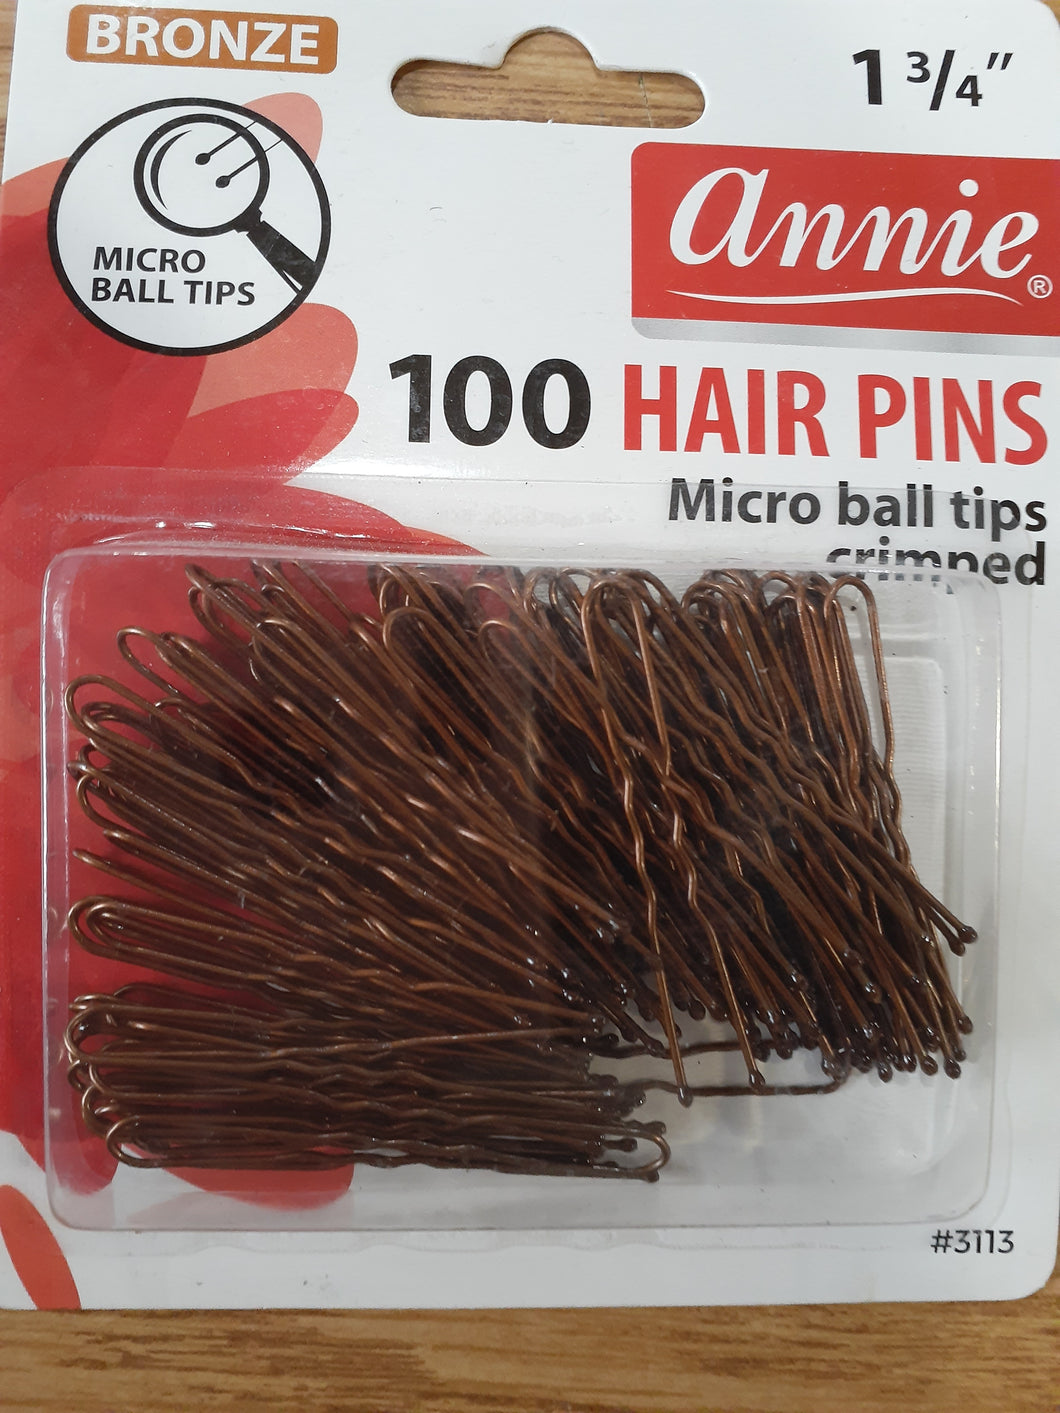 Annie bronze 100 hair pins micro ball tips crimped  1 3/4